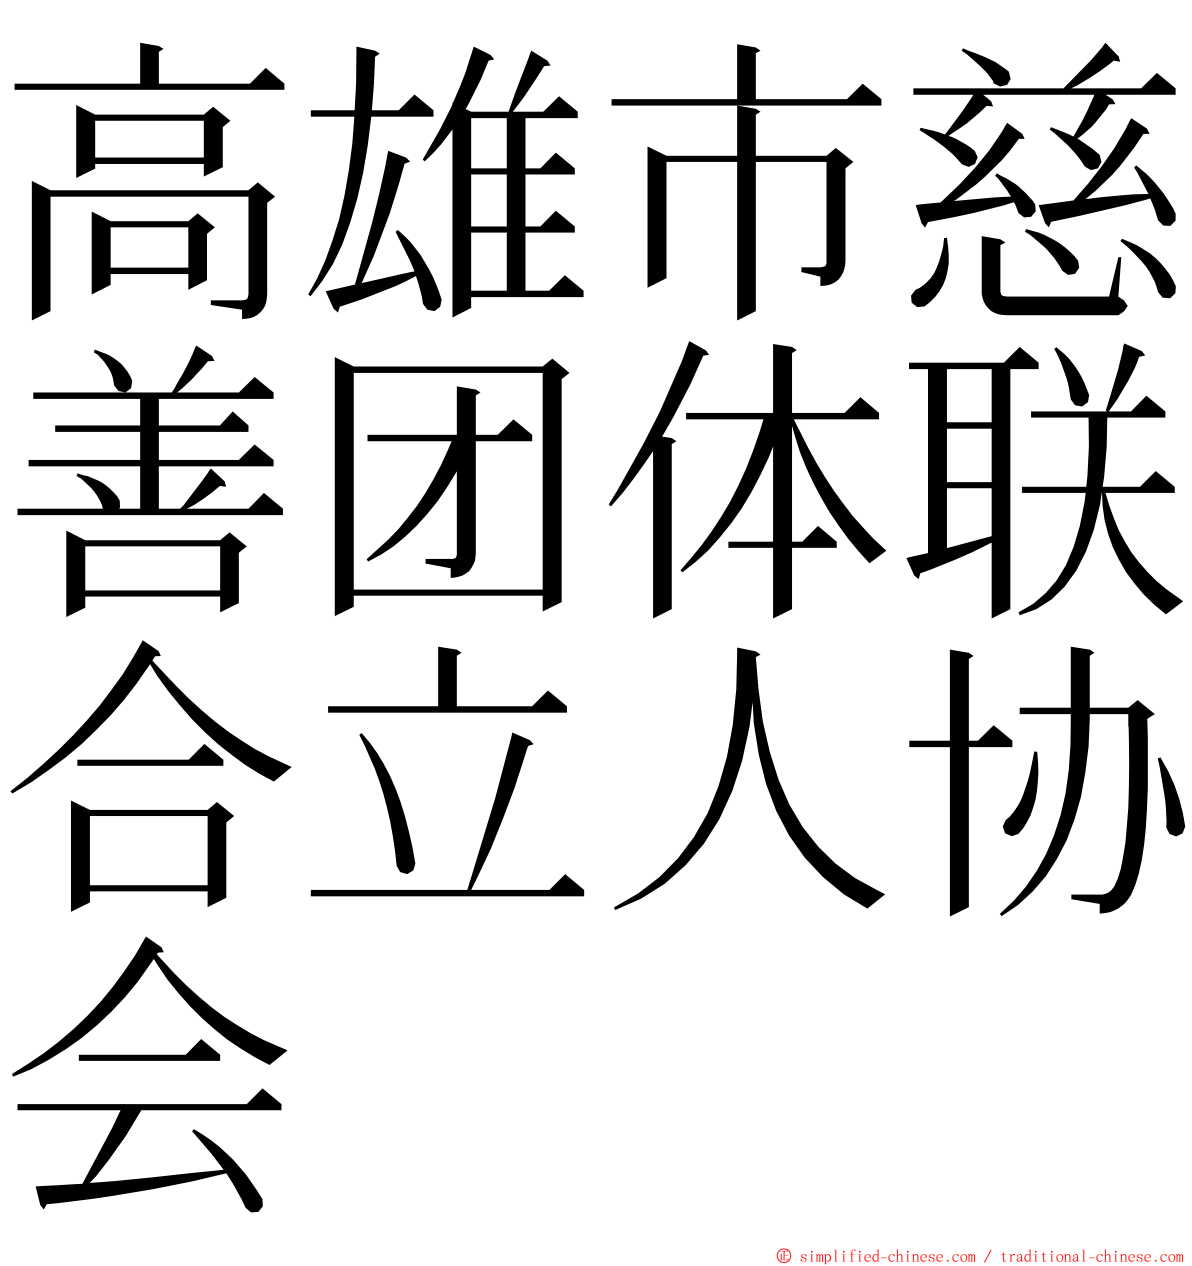 高雄市慈善团体联合立人协会 ming font